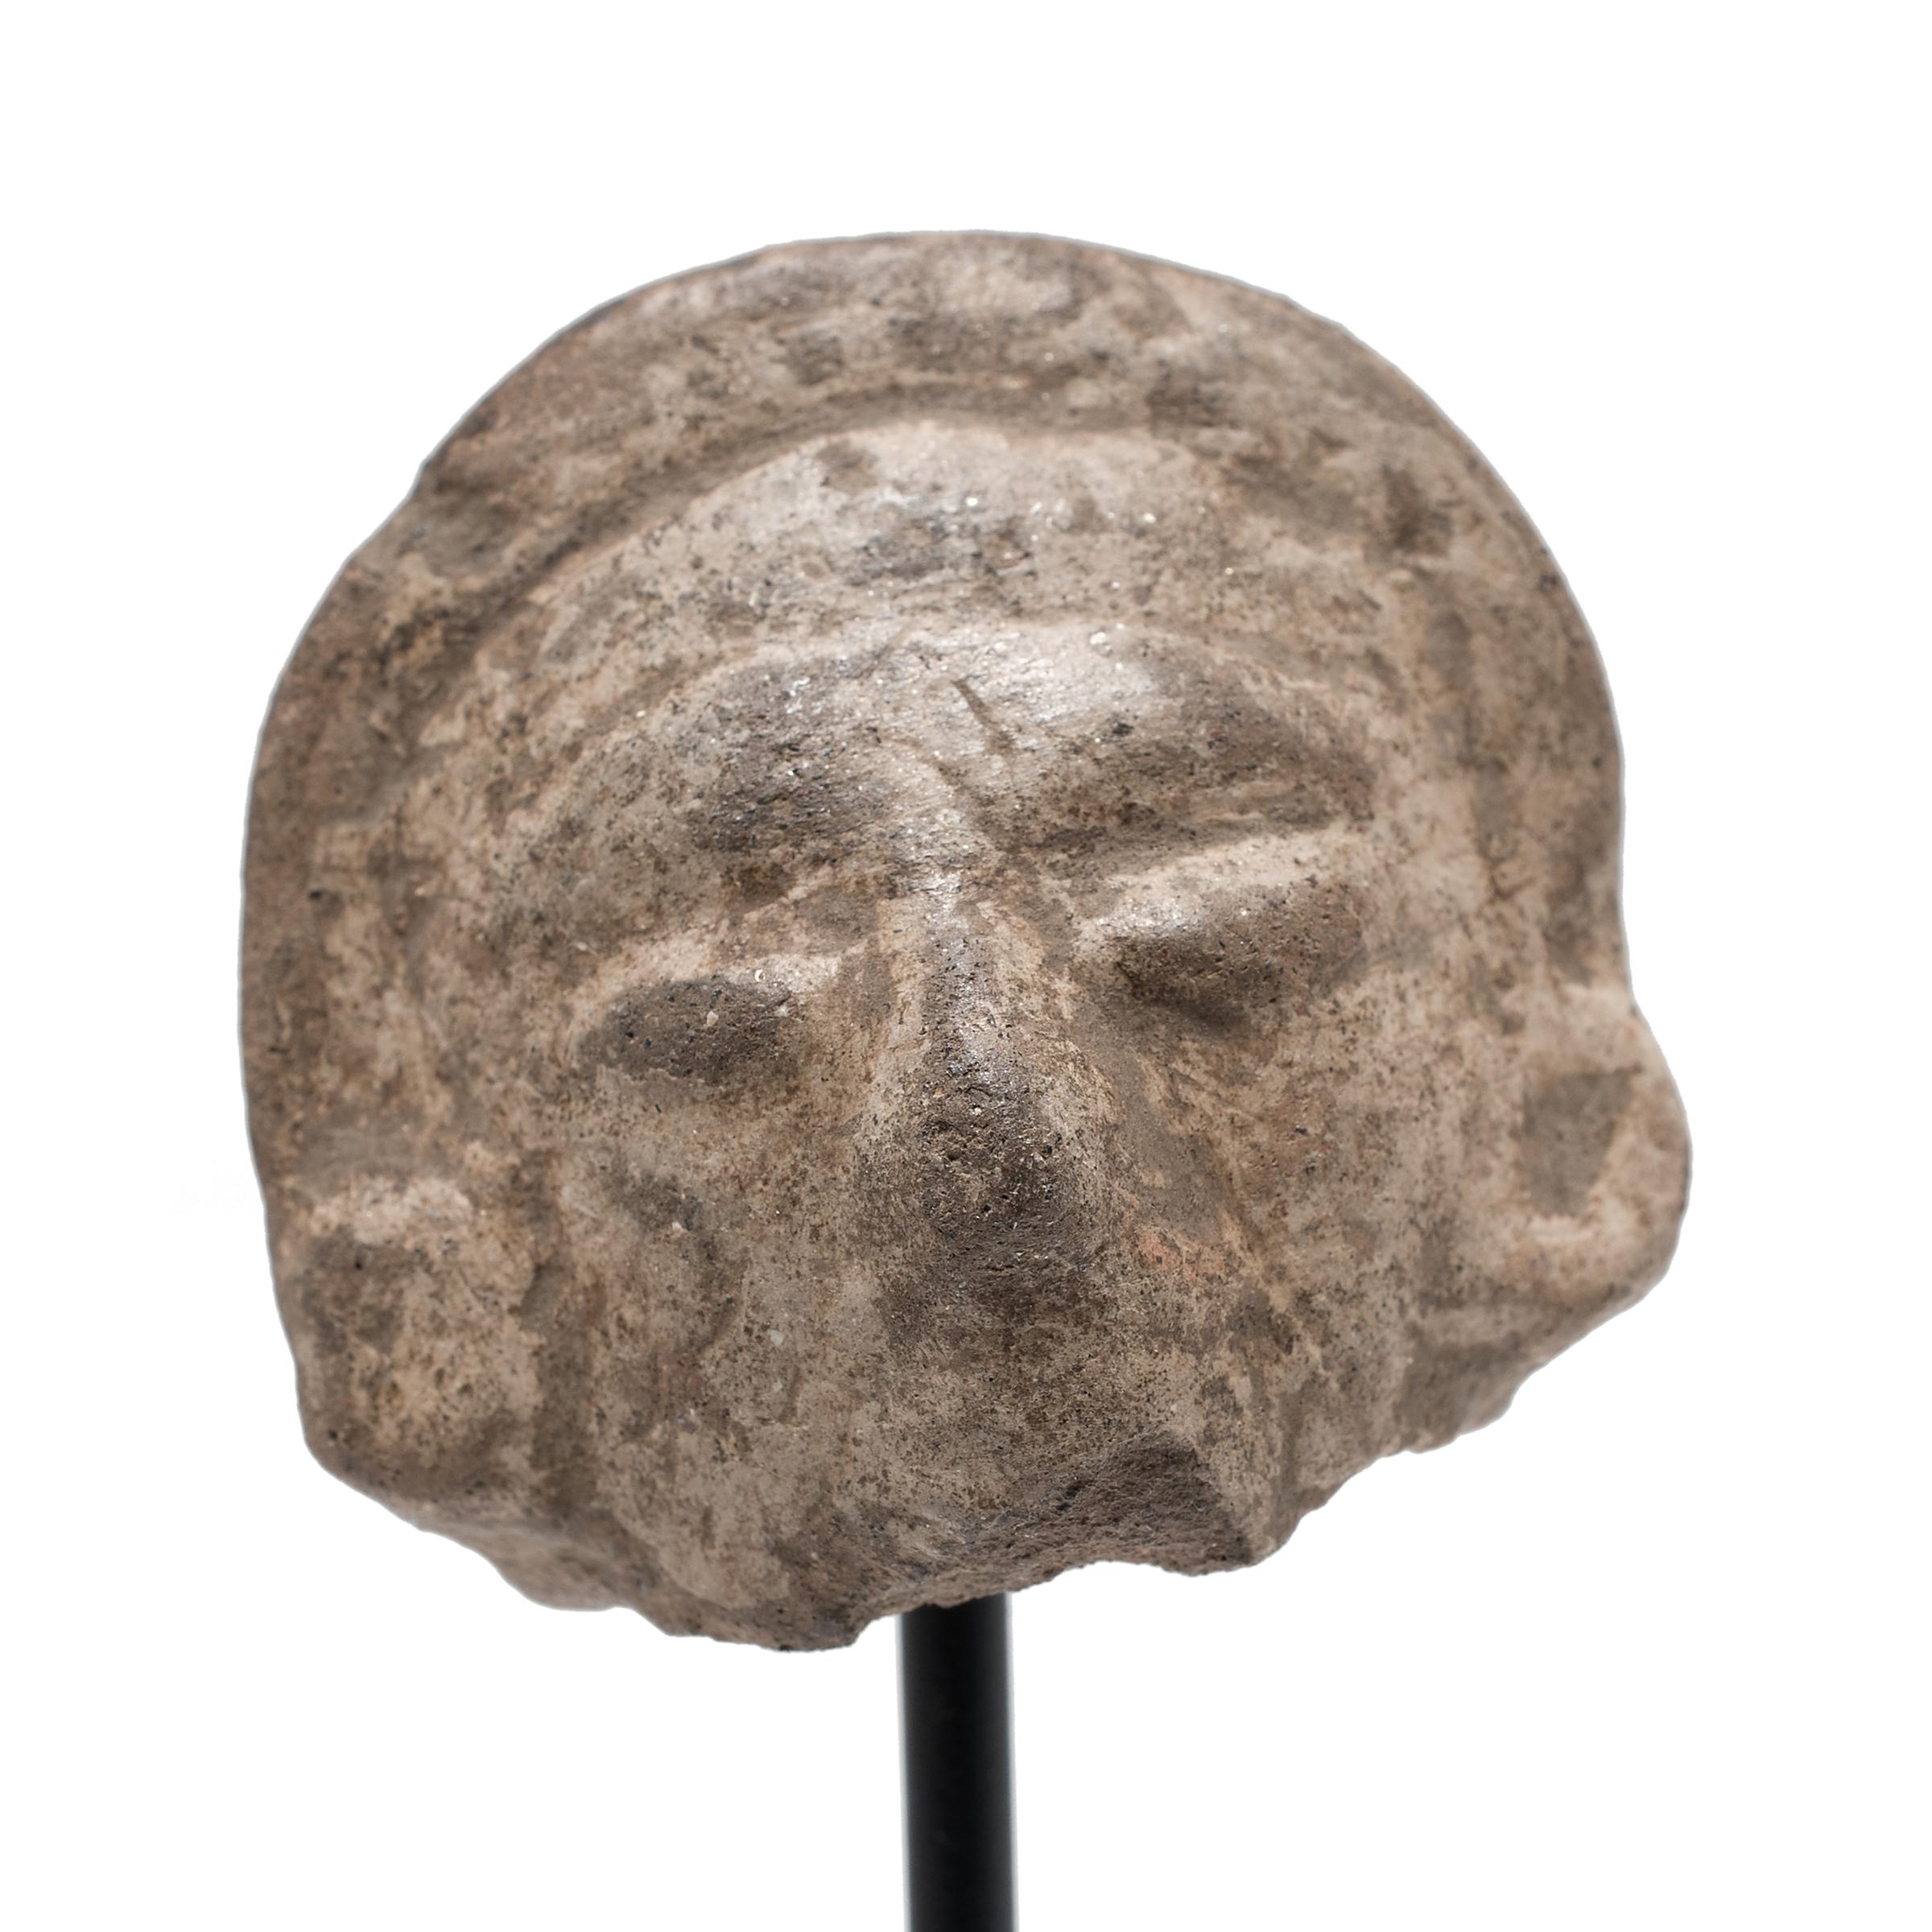 Dieses faszinierende Kopffragment war einst an einer prä-Columbianischen Büste oder Vollplastik angebracht. Steingutfiguren wie diese wurden im Laufe der mesoamerikanischen Geschichte in großer Zahl hergestellt und dienten einer Vielzahl von Zwecken